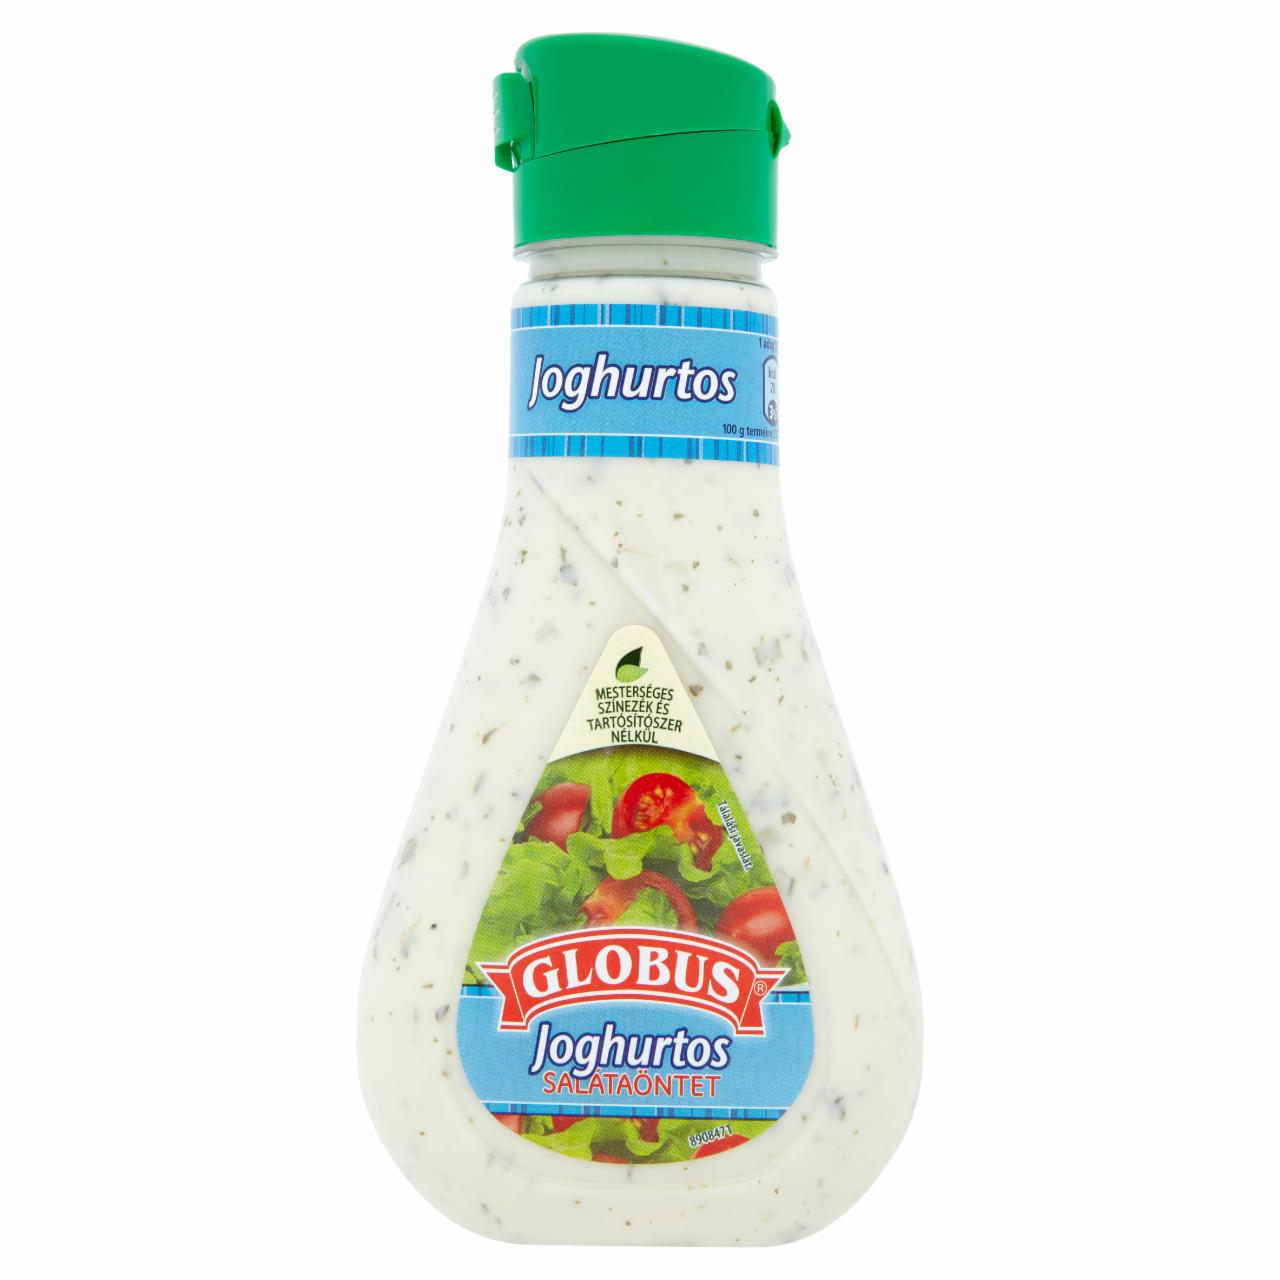 Képek - Globus joghurtos salátaöntet 242 g